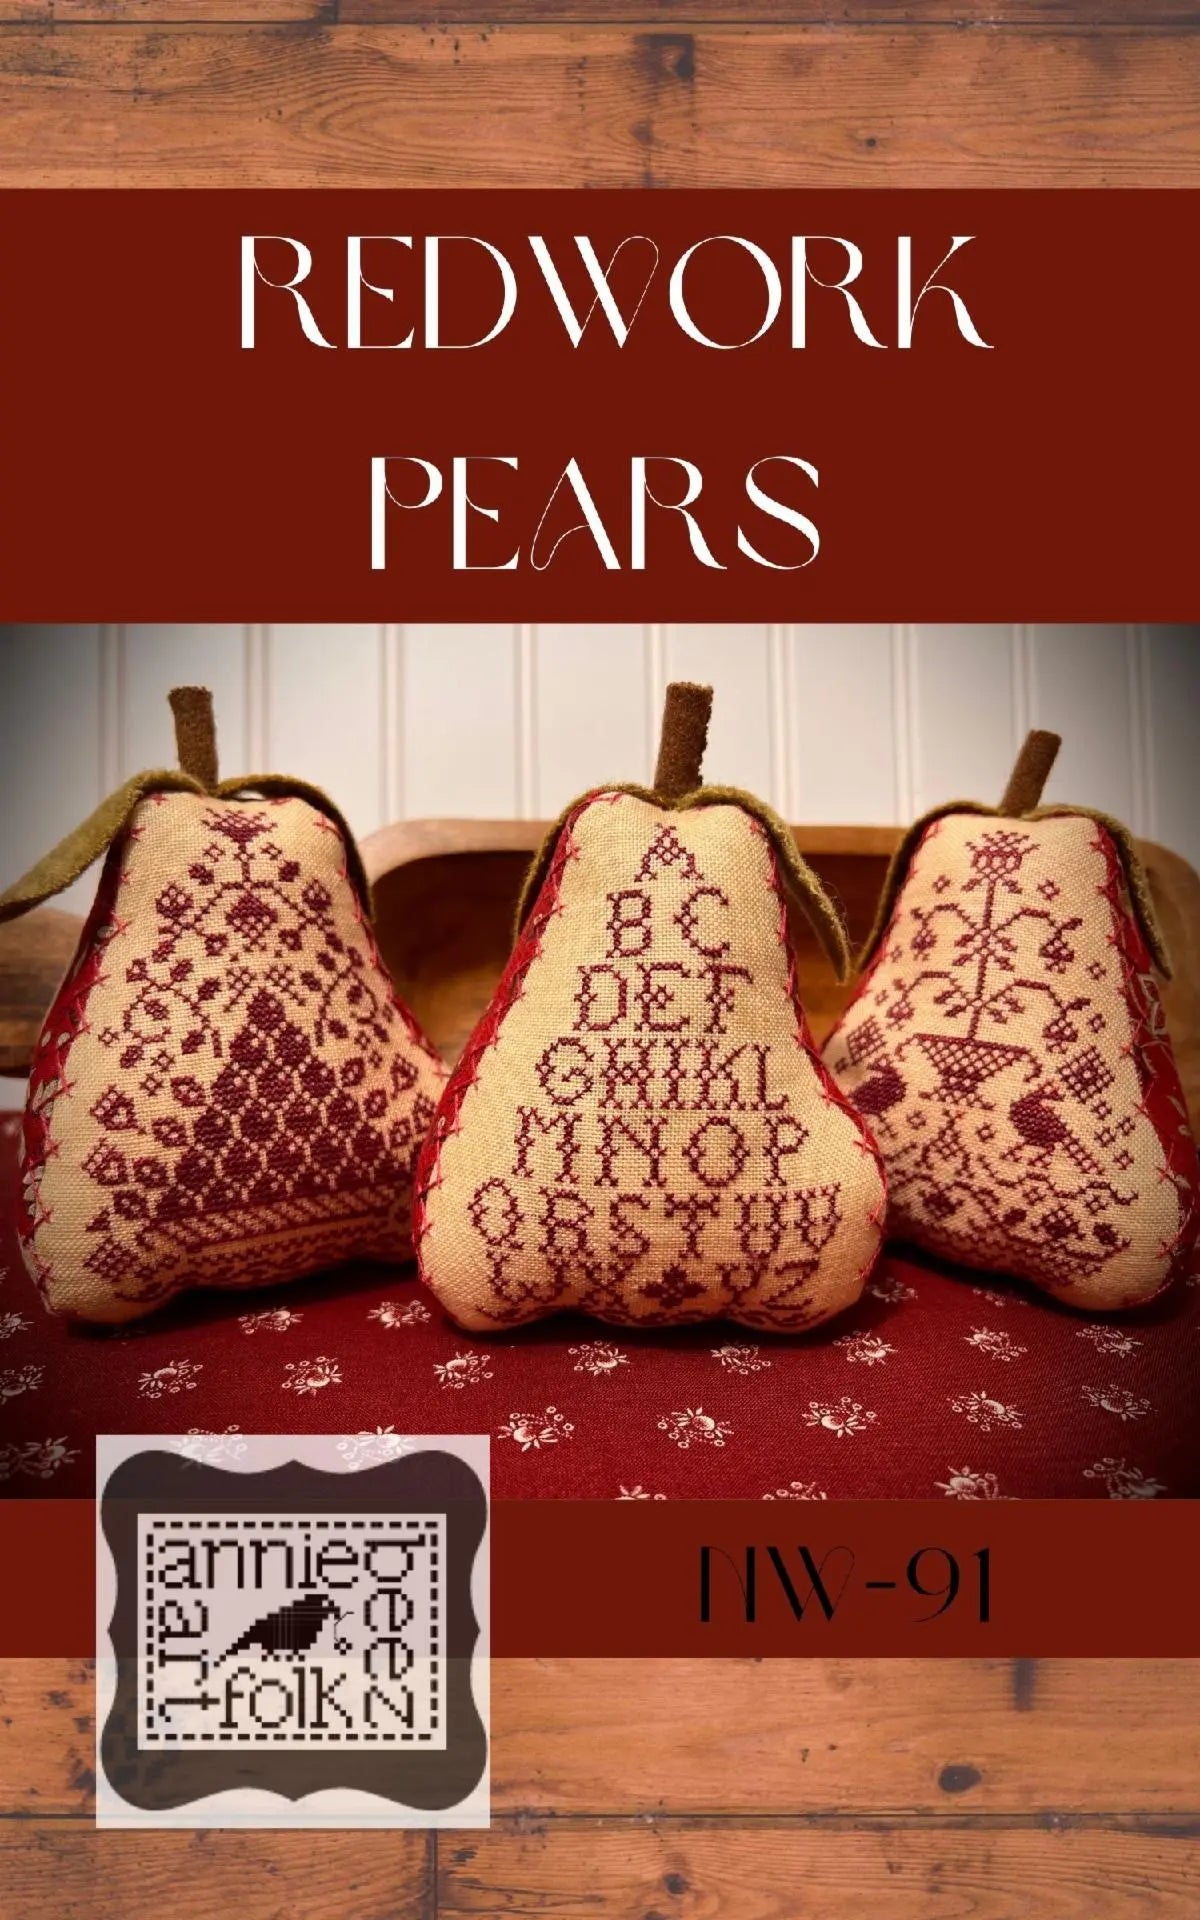 Redwork Pears by Annie Beez Folk Art Annie Beez Folk Art